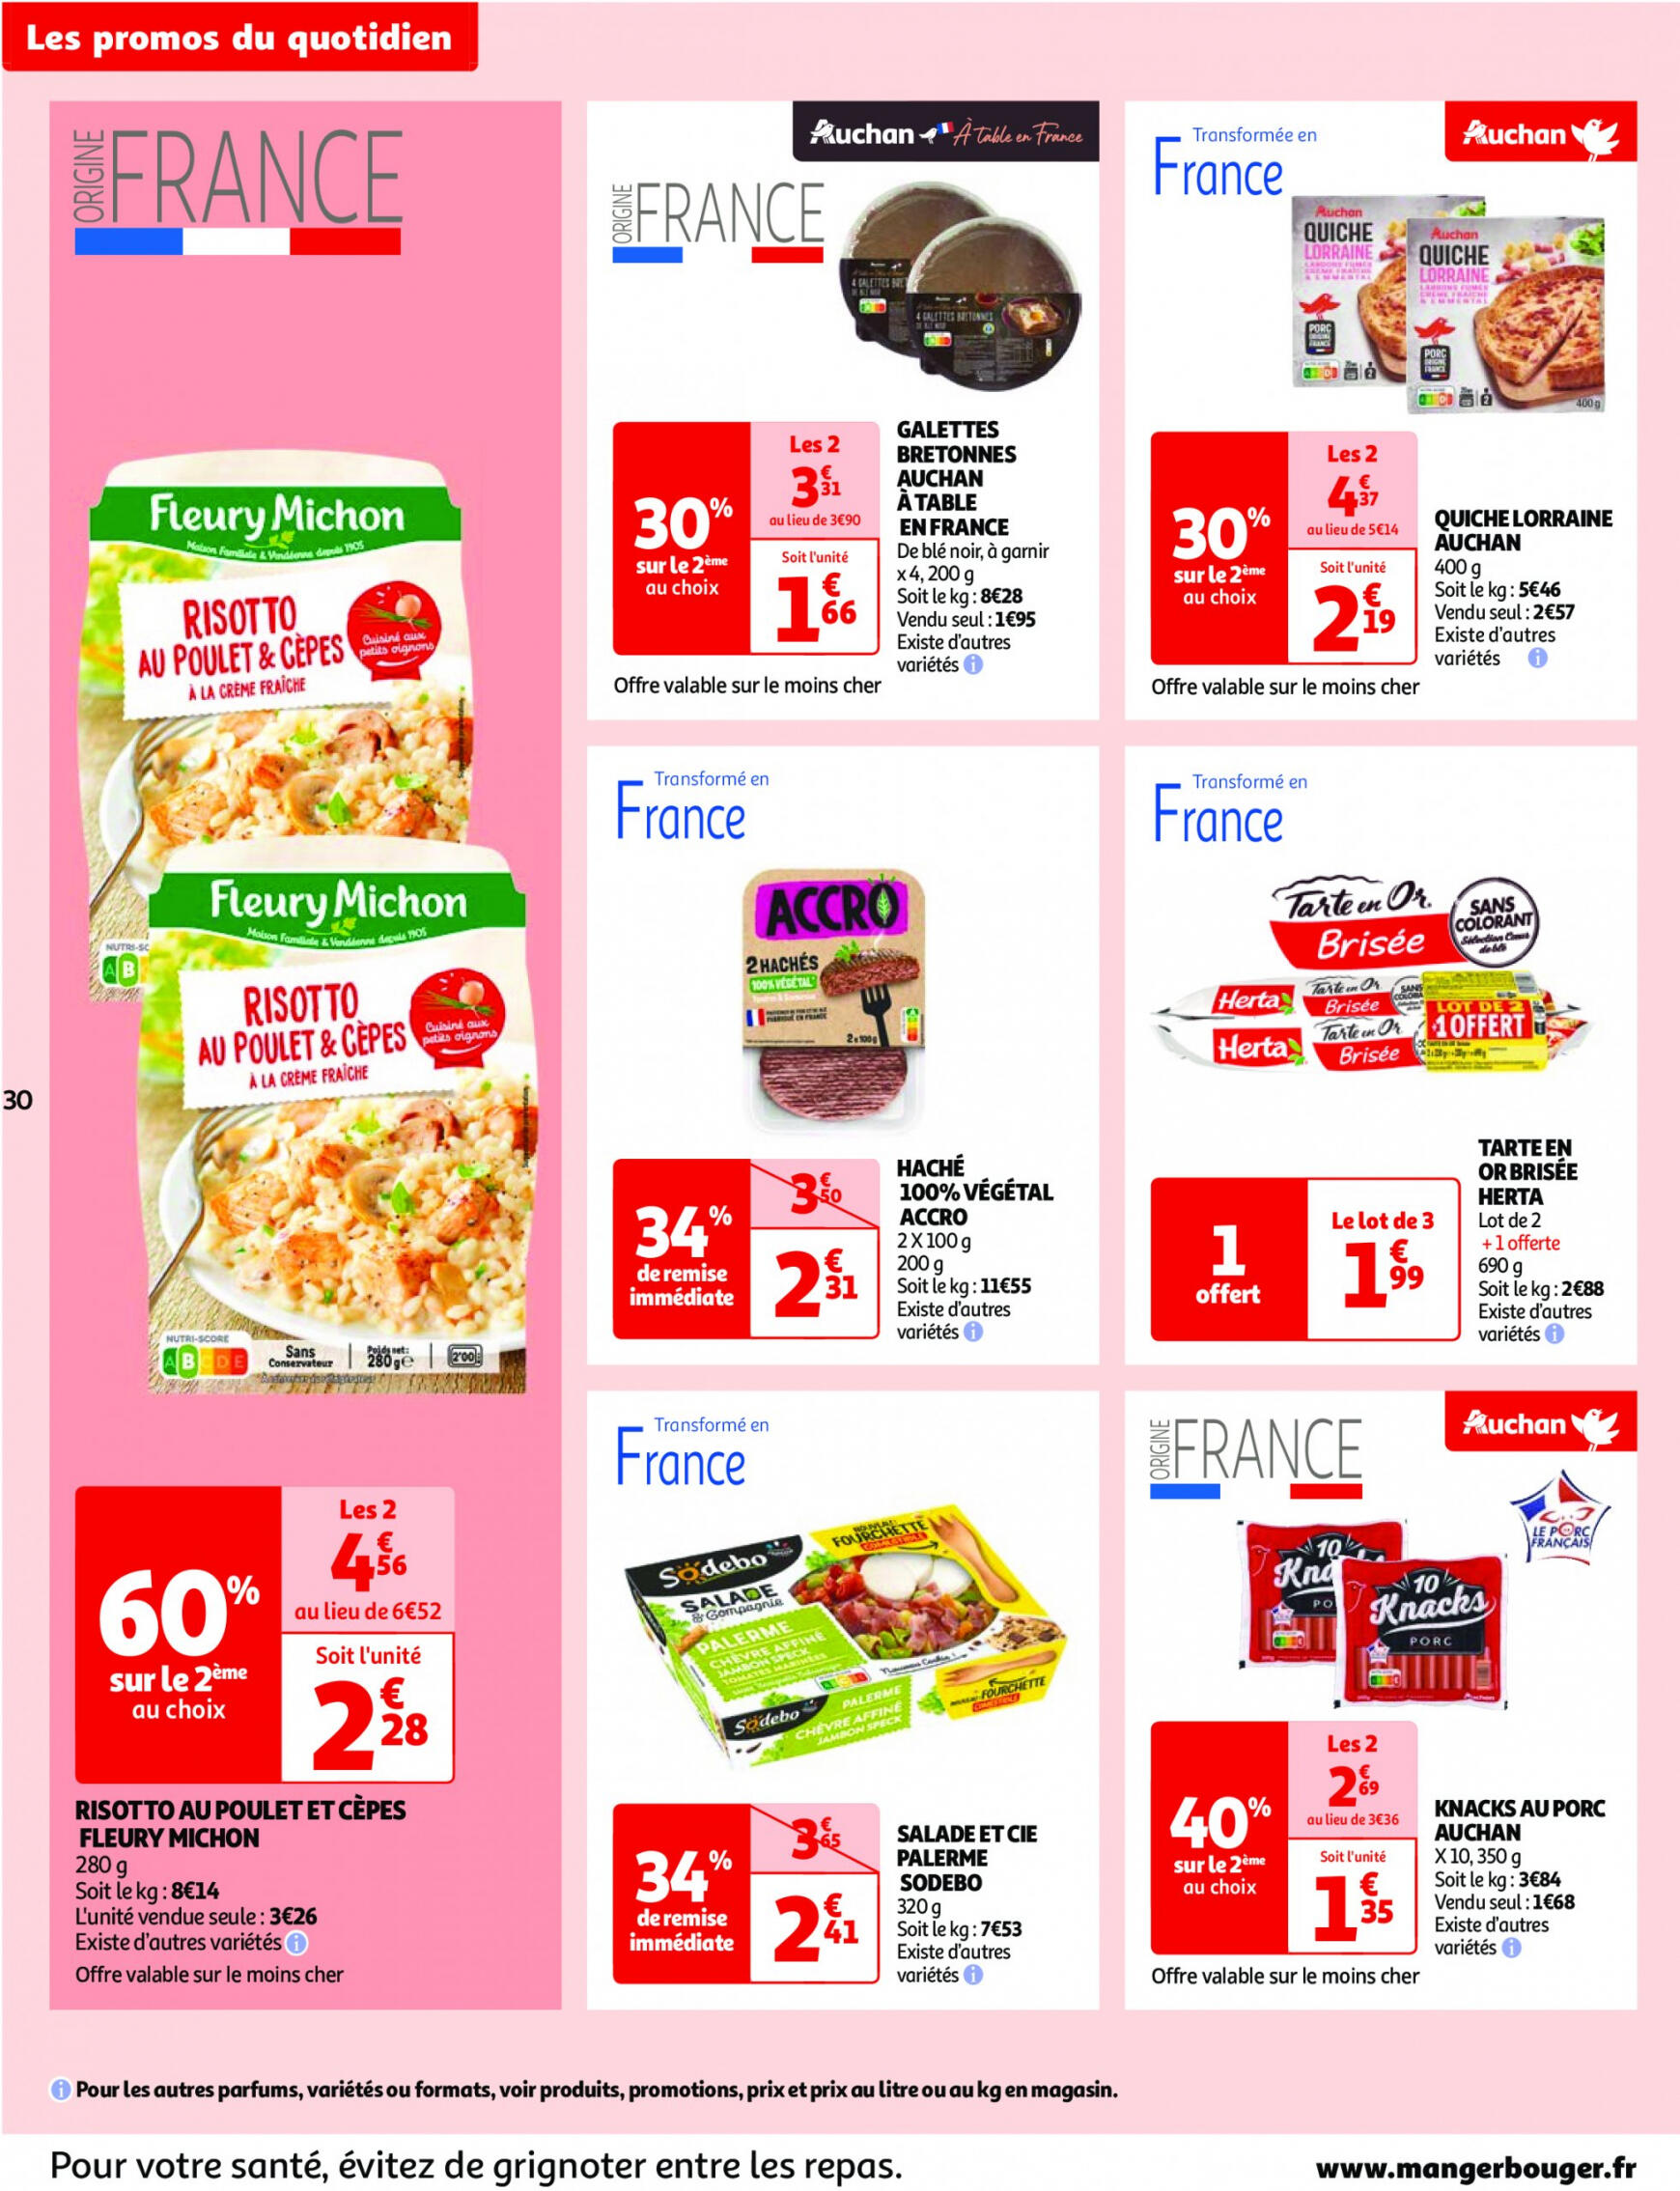 auchan - Prospectus Auchan actuel 14.05. - 21.05. - page: 30